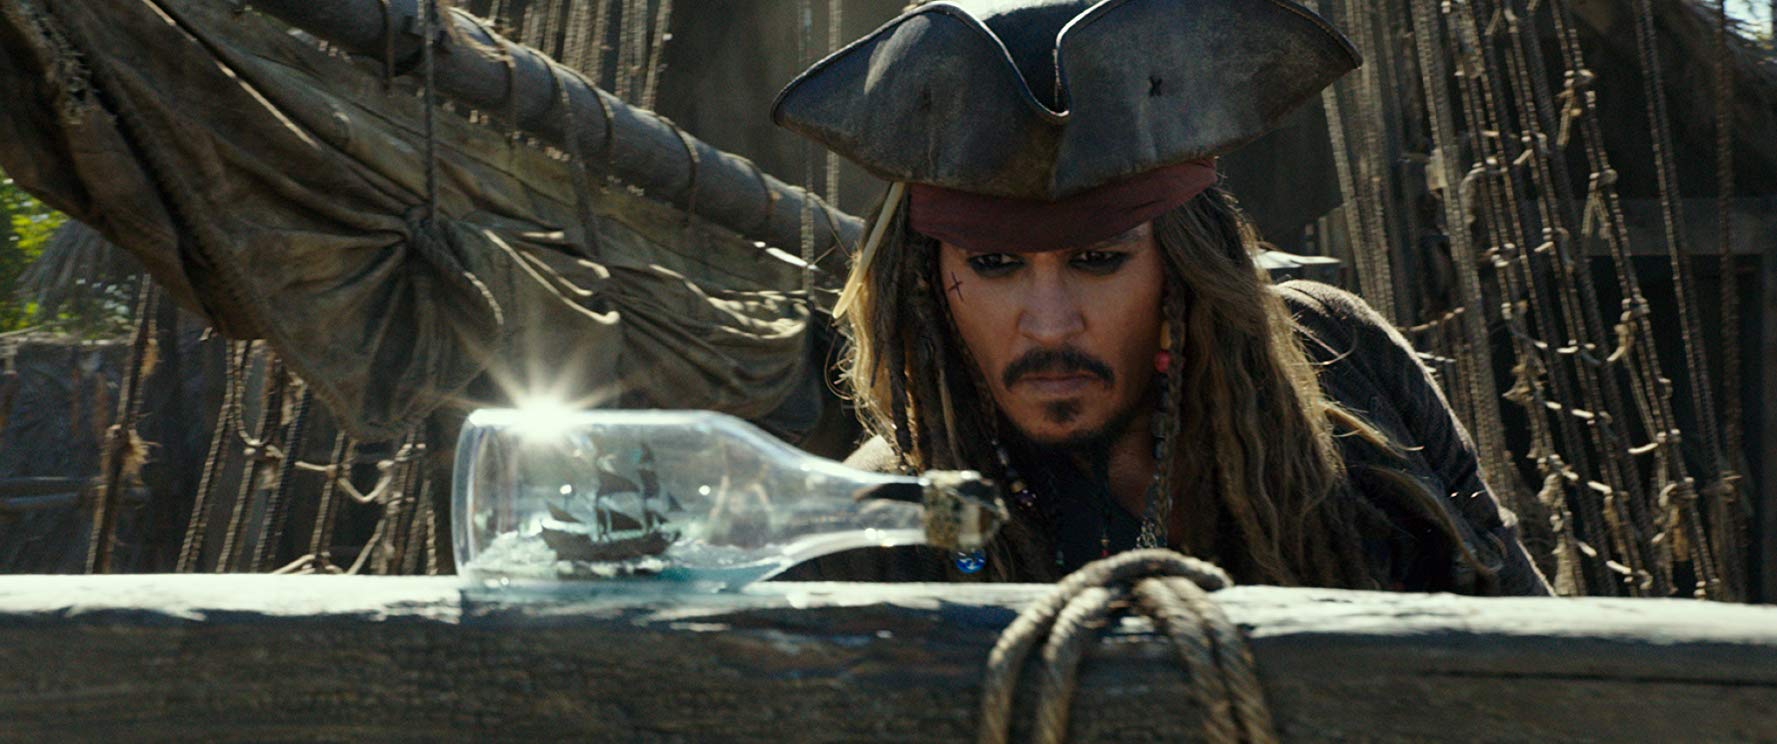 조니 뎁 Johnny Depp / 캐리비안의 해적: 죽은 자는 말이 없다 Pirates of the Carribian: Dead Men Tell No Tales